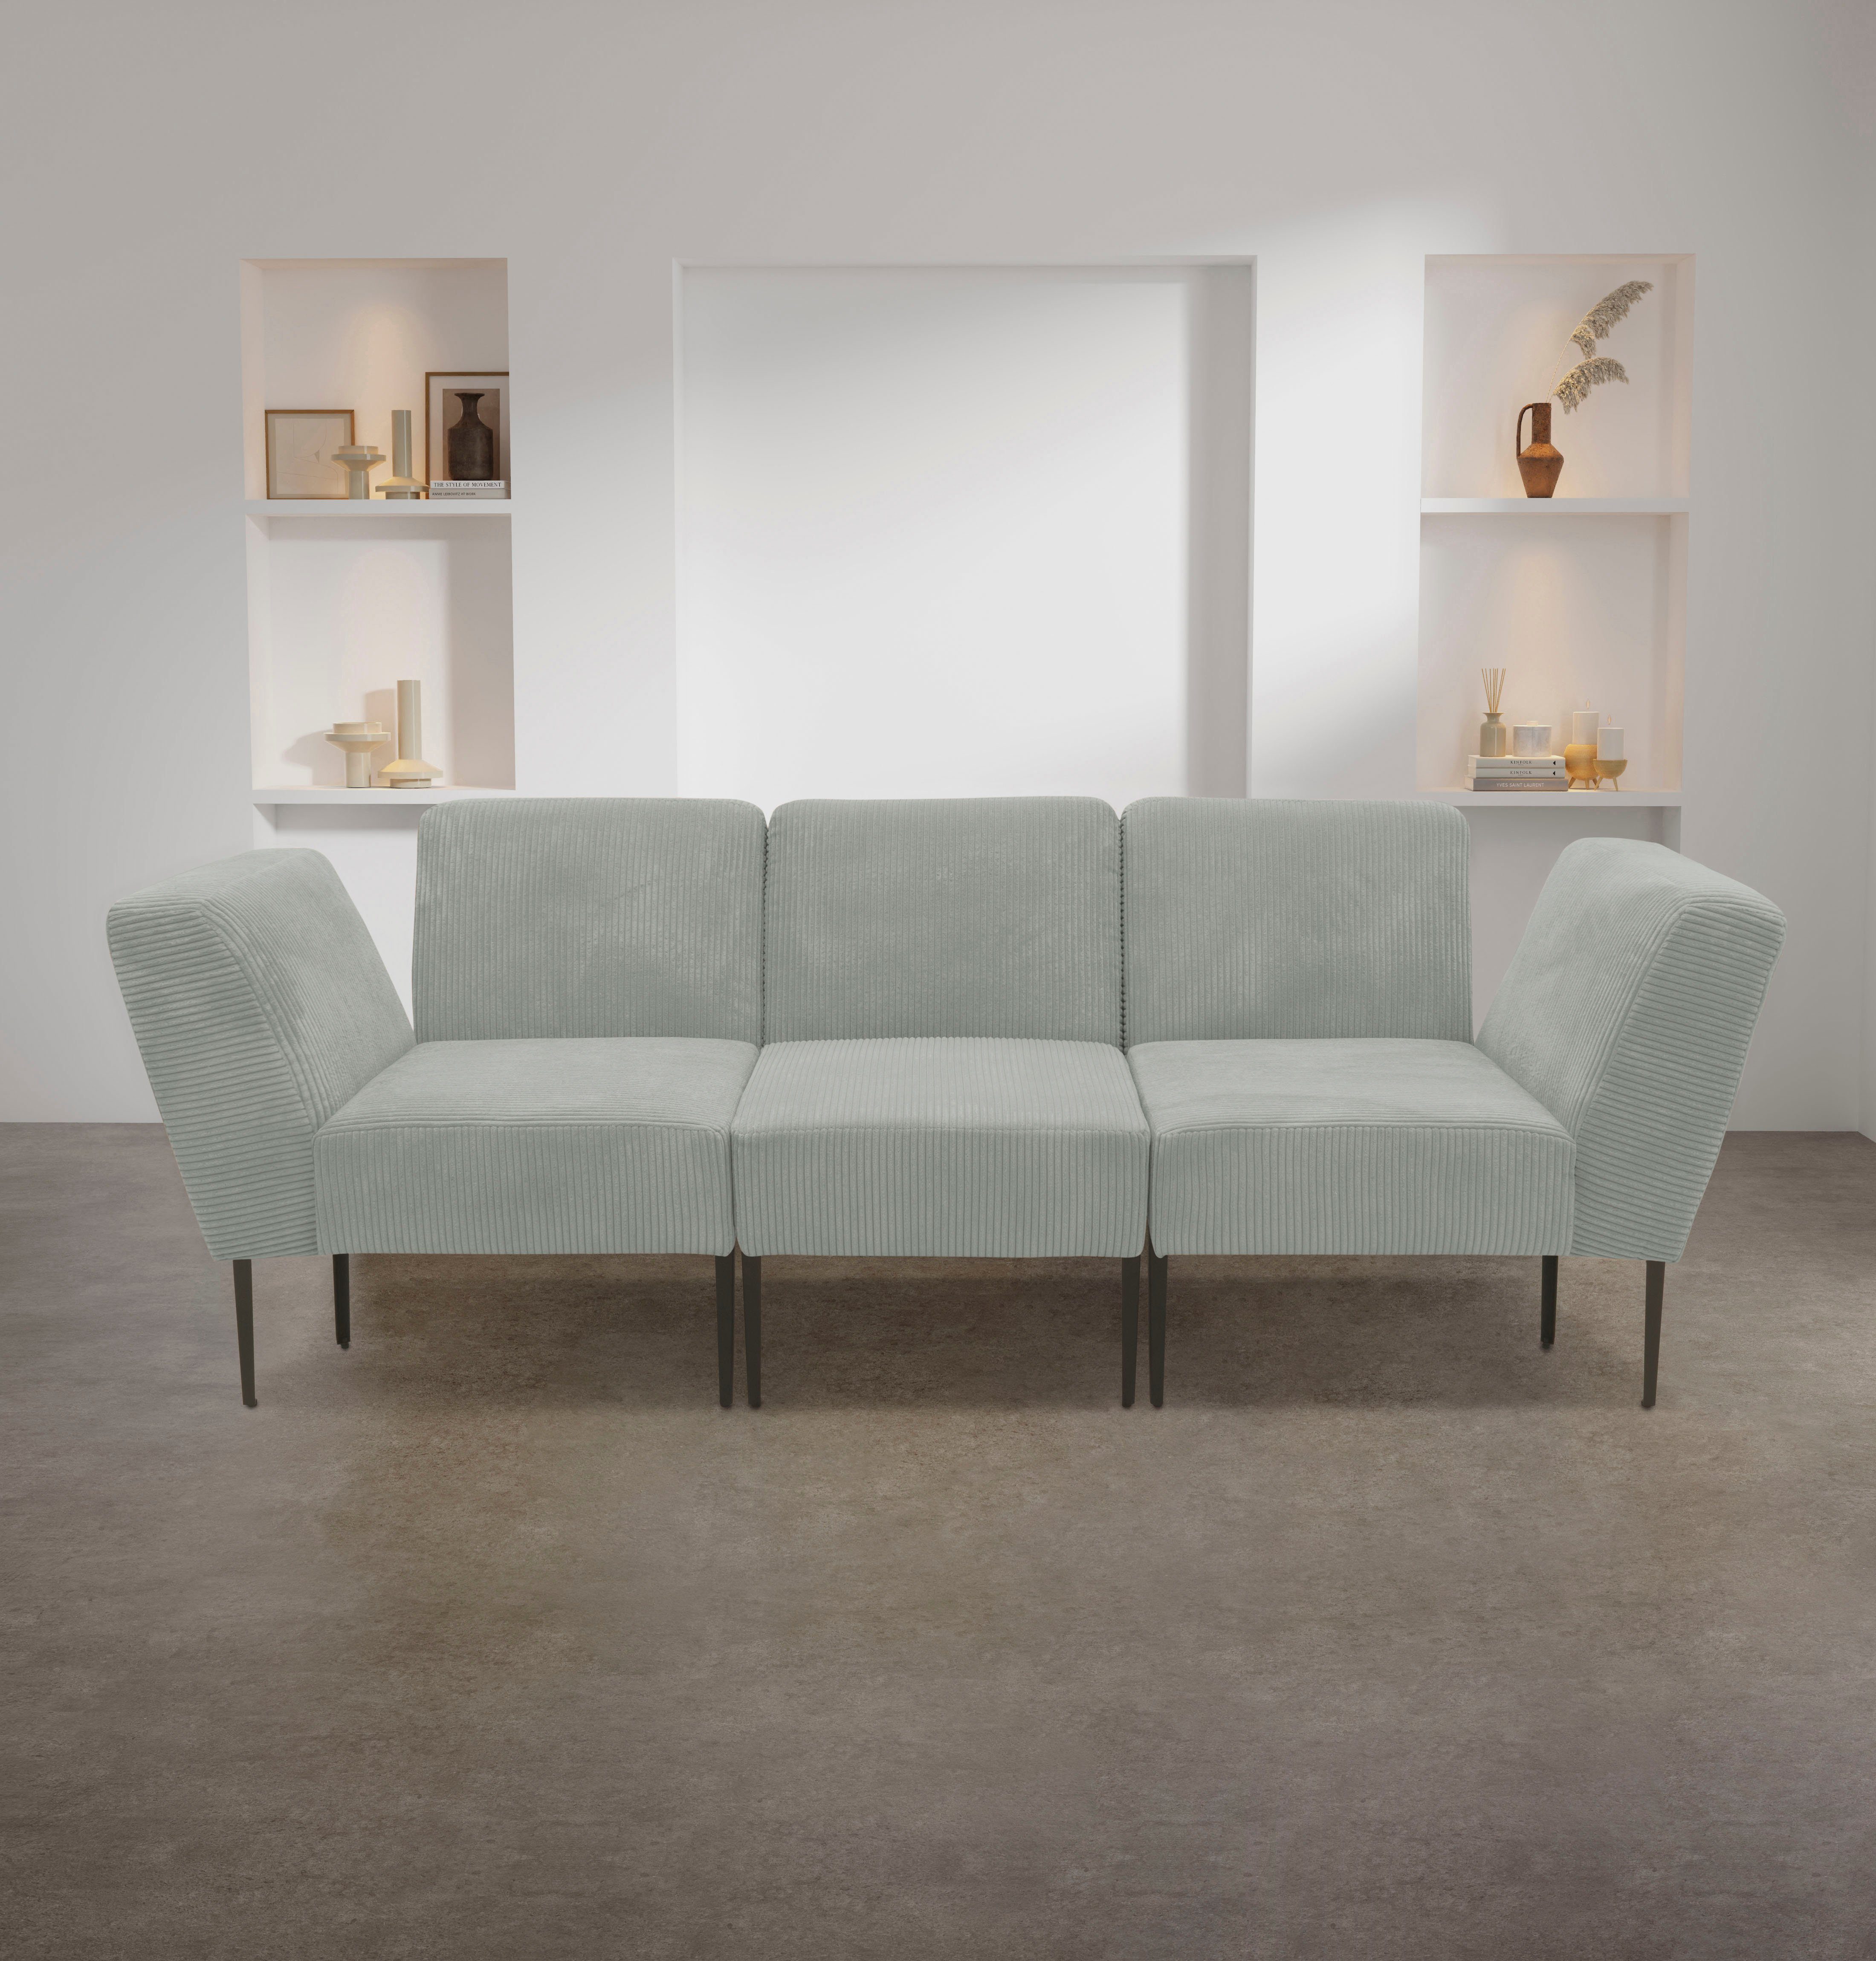 hellgrau collection Sofas für Sessel 700010, Zusammenstellung individuelle persönlichen eines DOMO